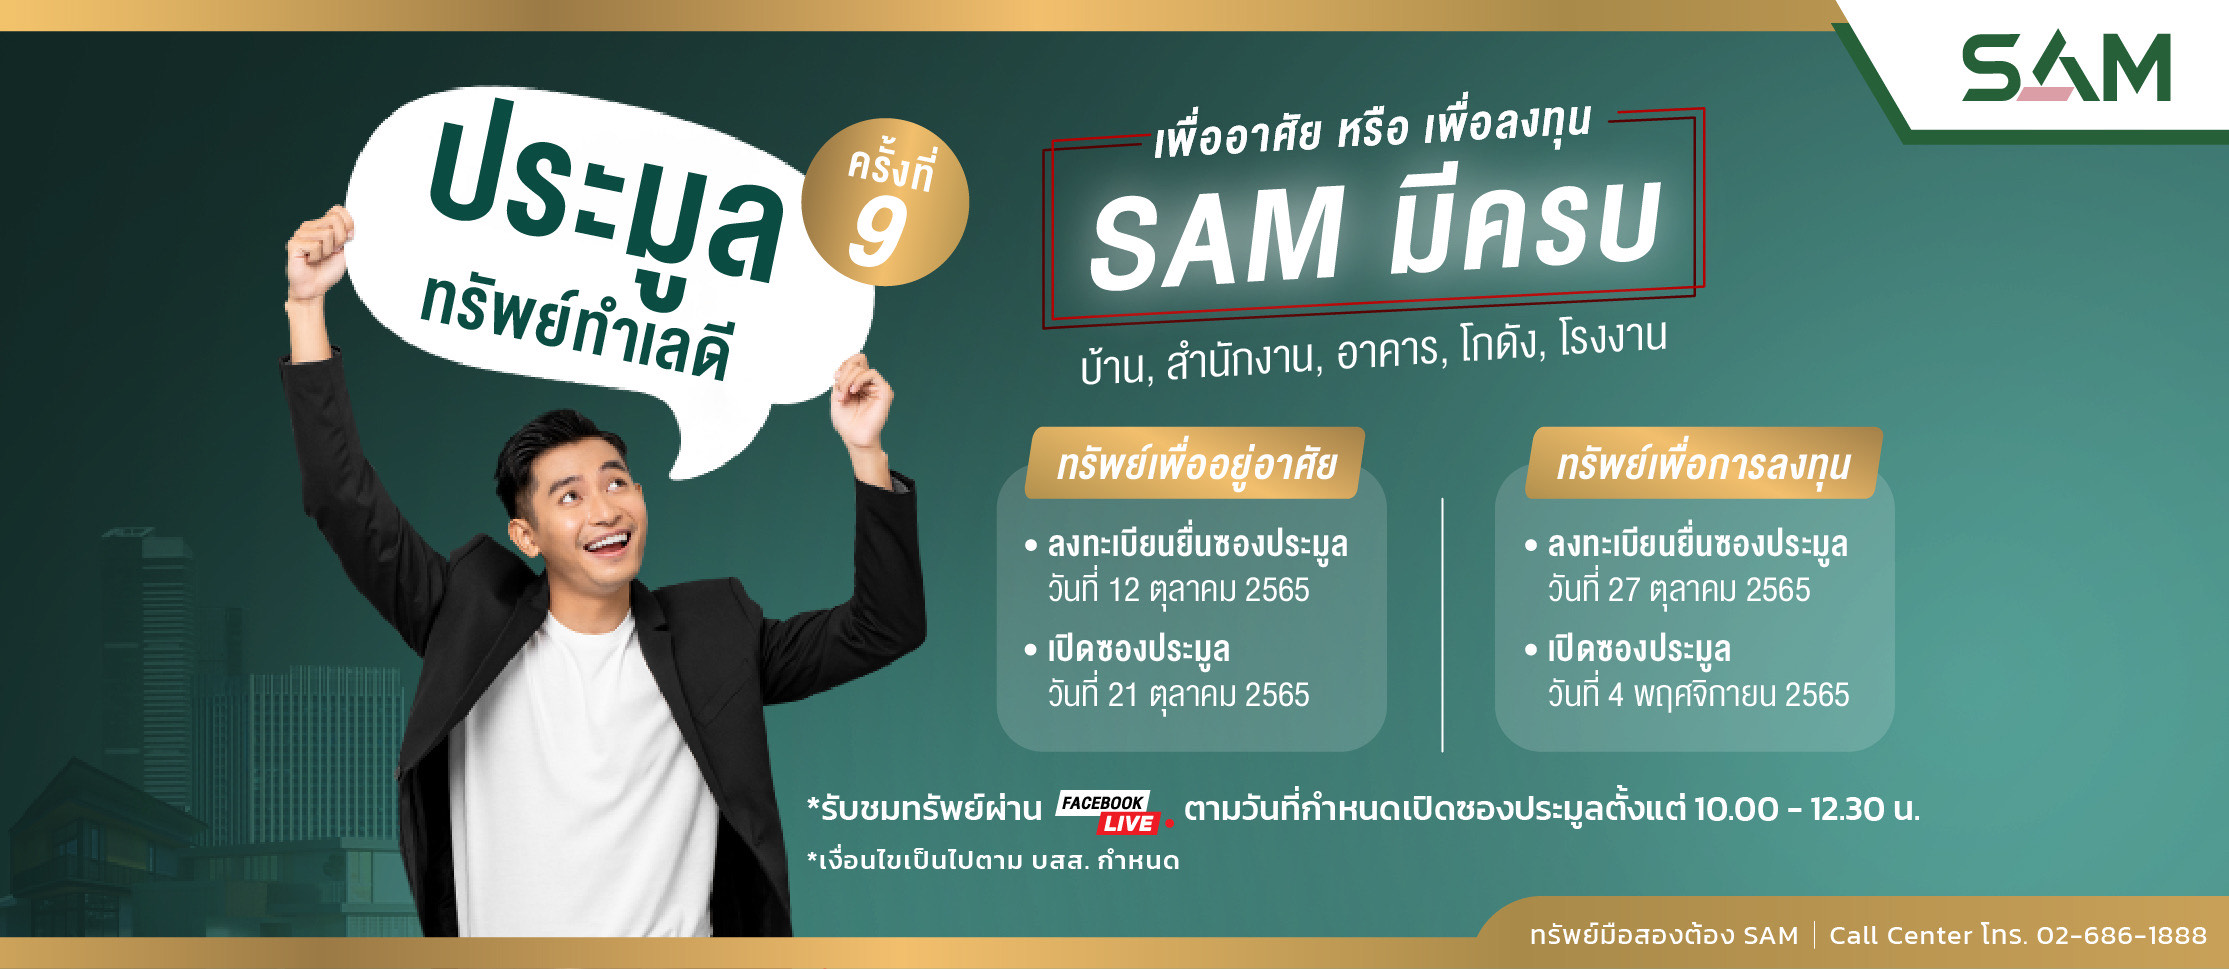 SAM บริษัทบริหารสินทรัพย์ของคนไทย เร่งเครื่องรุกตลาด NPA โค้งสุดท้ายไตรมาส 4 จัด Clearance Sale ปลุกดีมานด์ลูกค้า ปรับลดราคาครั้งยิ่งใหญ่ที่สุดในรอบปีสูงสุดถึง 30%